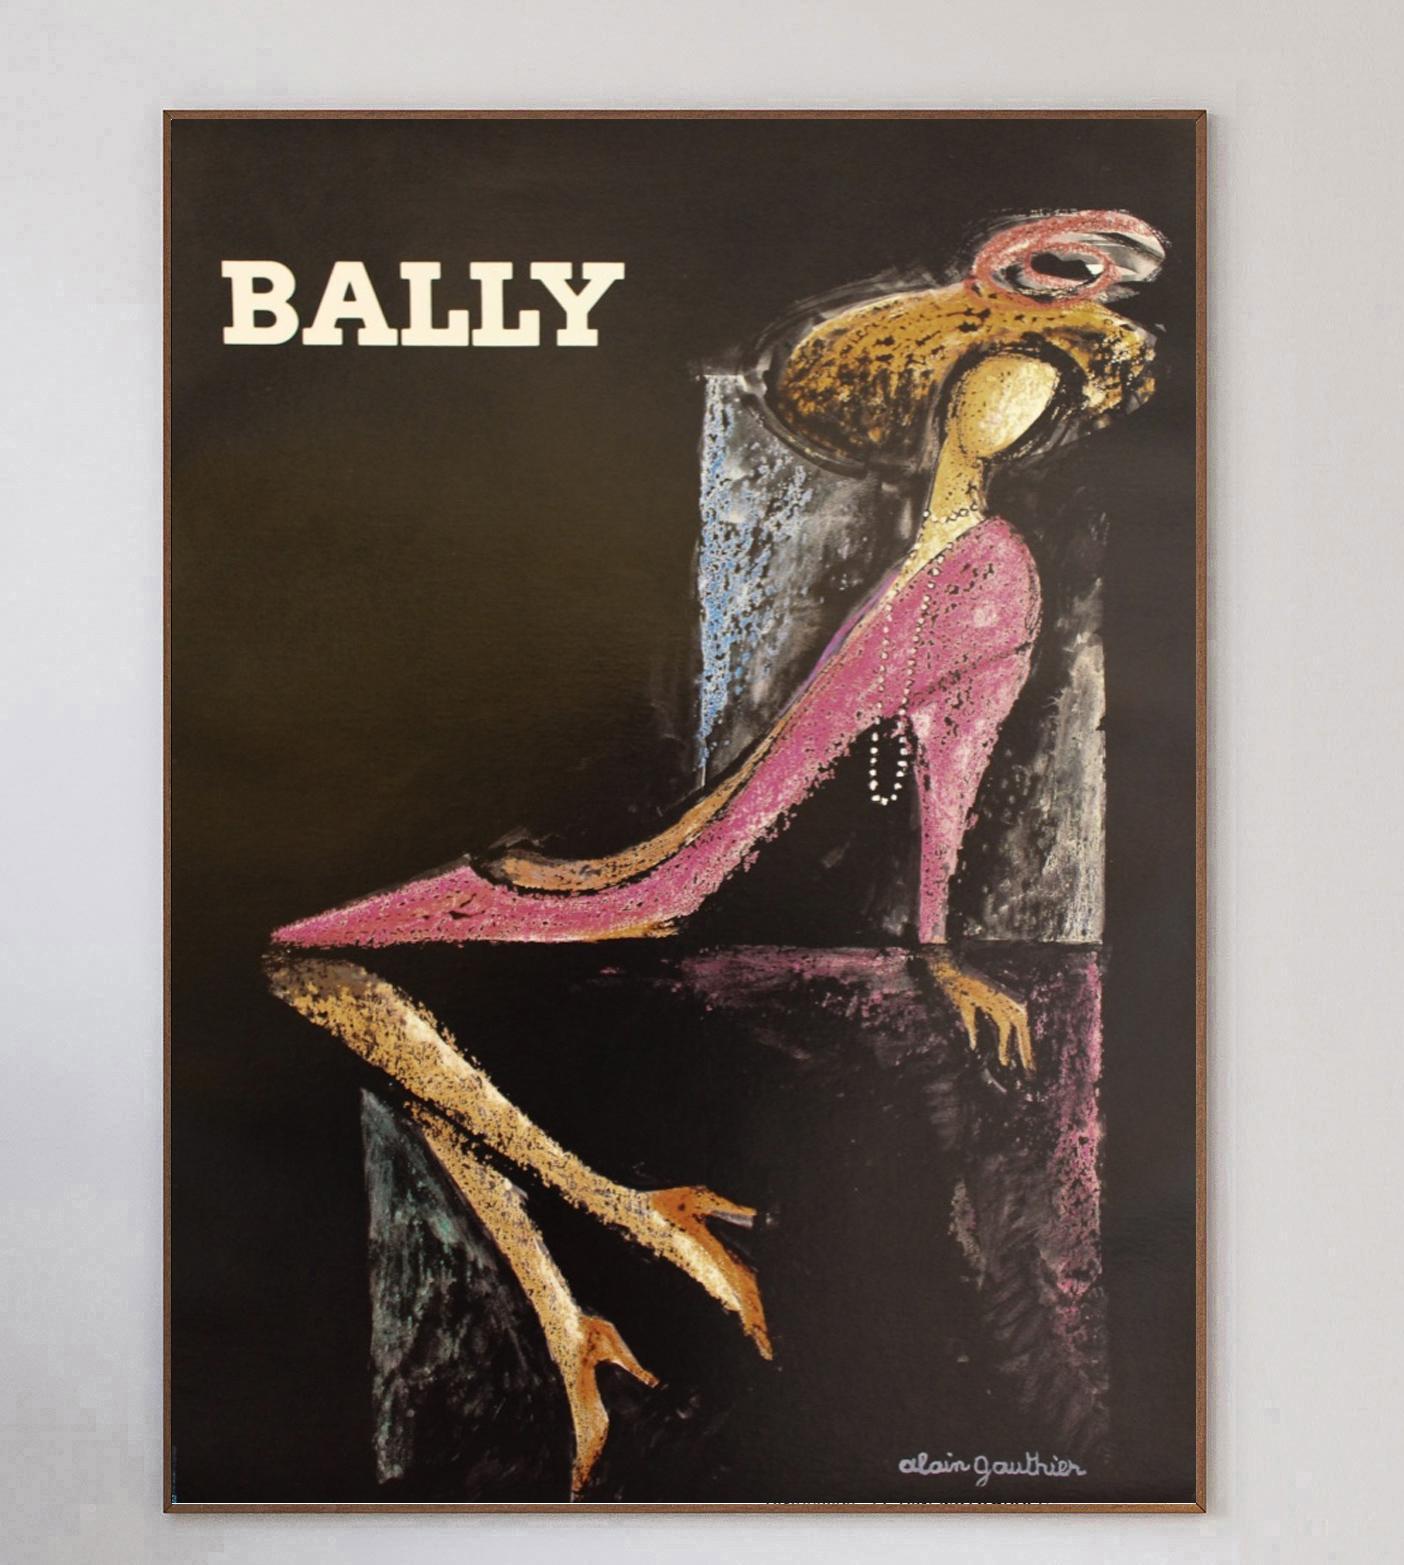 Magnifique affiche de 1970 pour la marque de chaussures de luxe suisses Bally. Avec les œuvres du graphiste et affichiste français Alain Gauthier, cette pièce sombre et luxueuse respire la classe, en particulier dans son format extra-large.

Cette